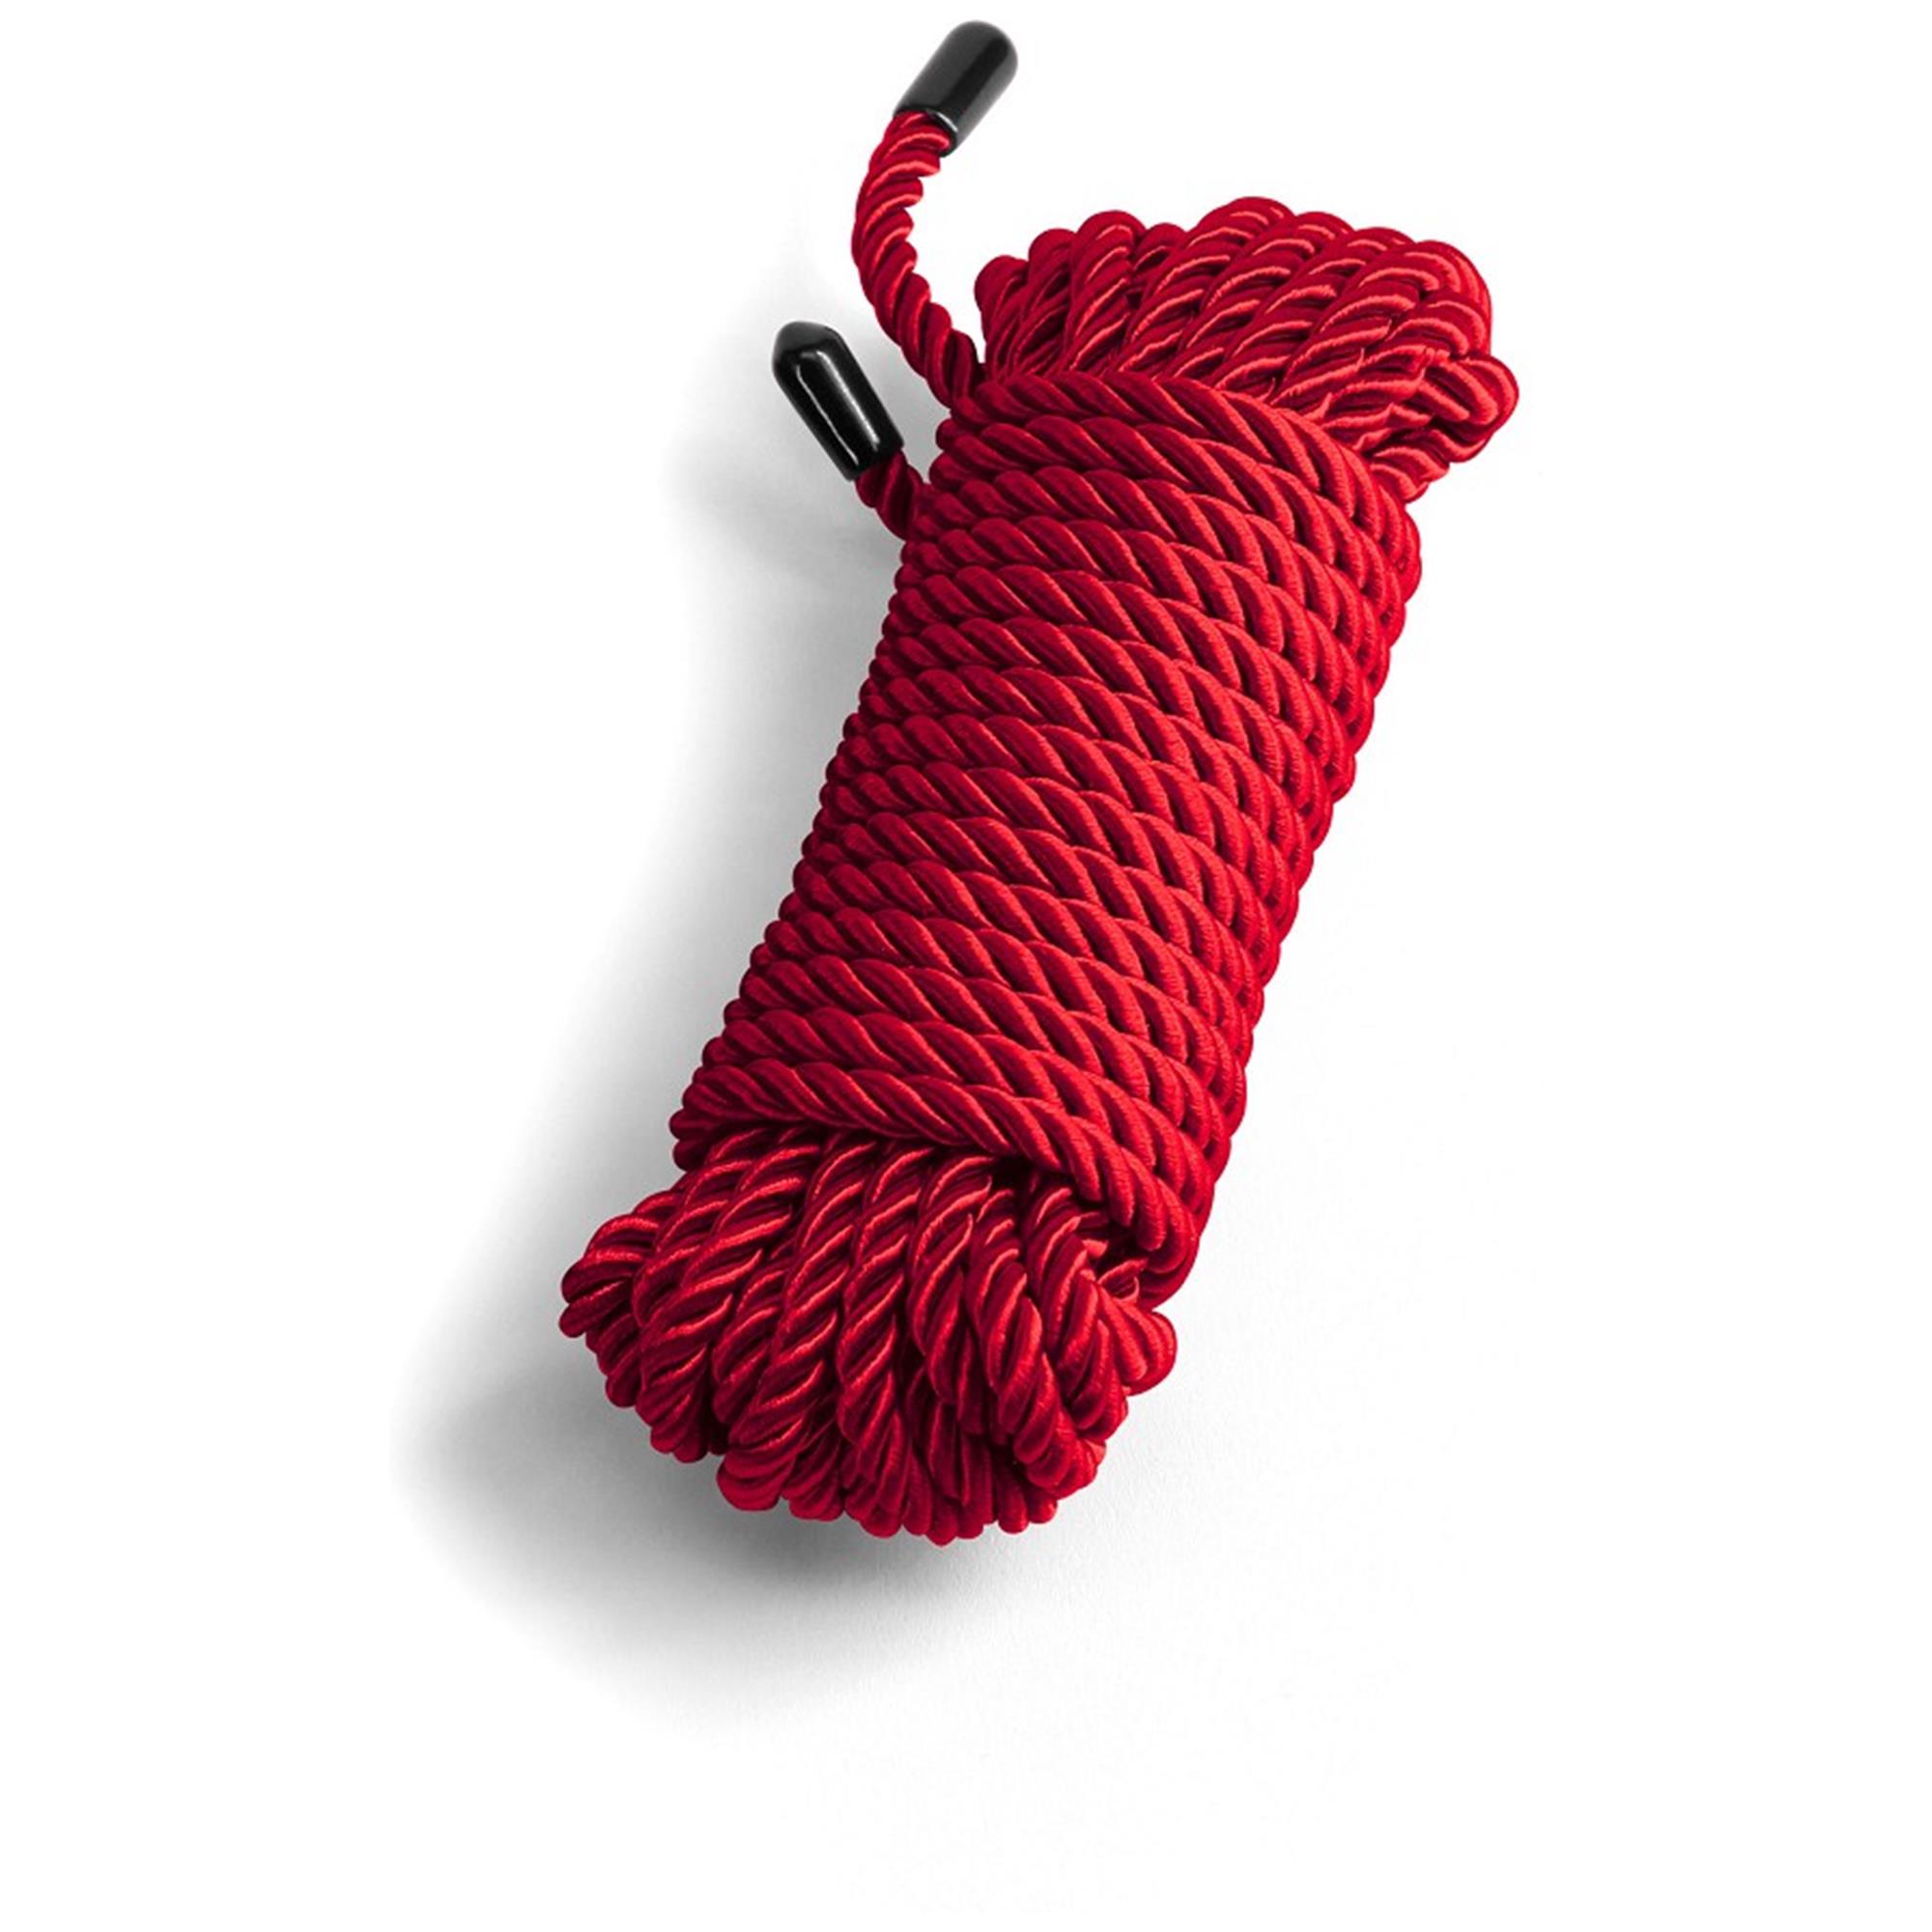 Brug Bound Rope Red til en forbedret oplevelse